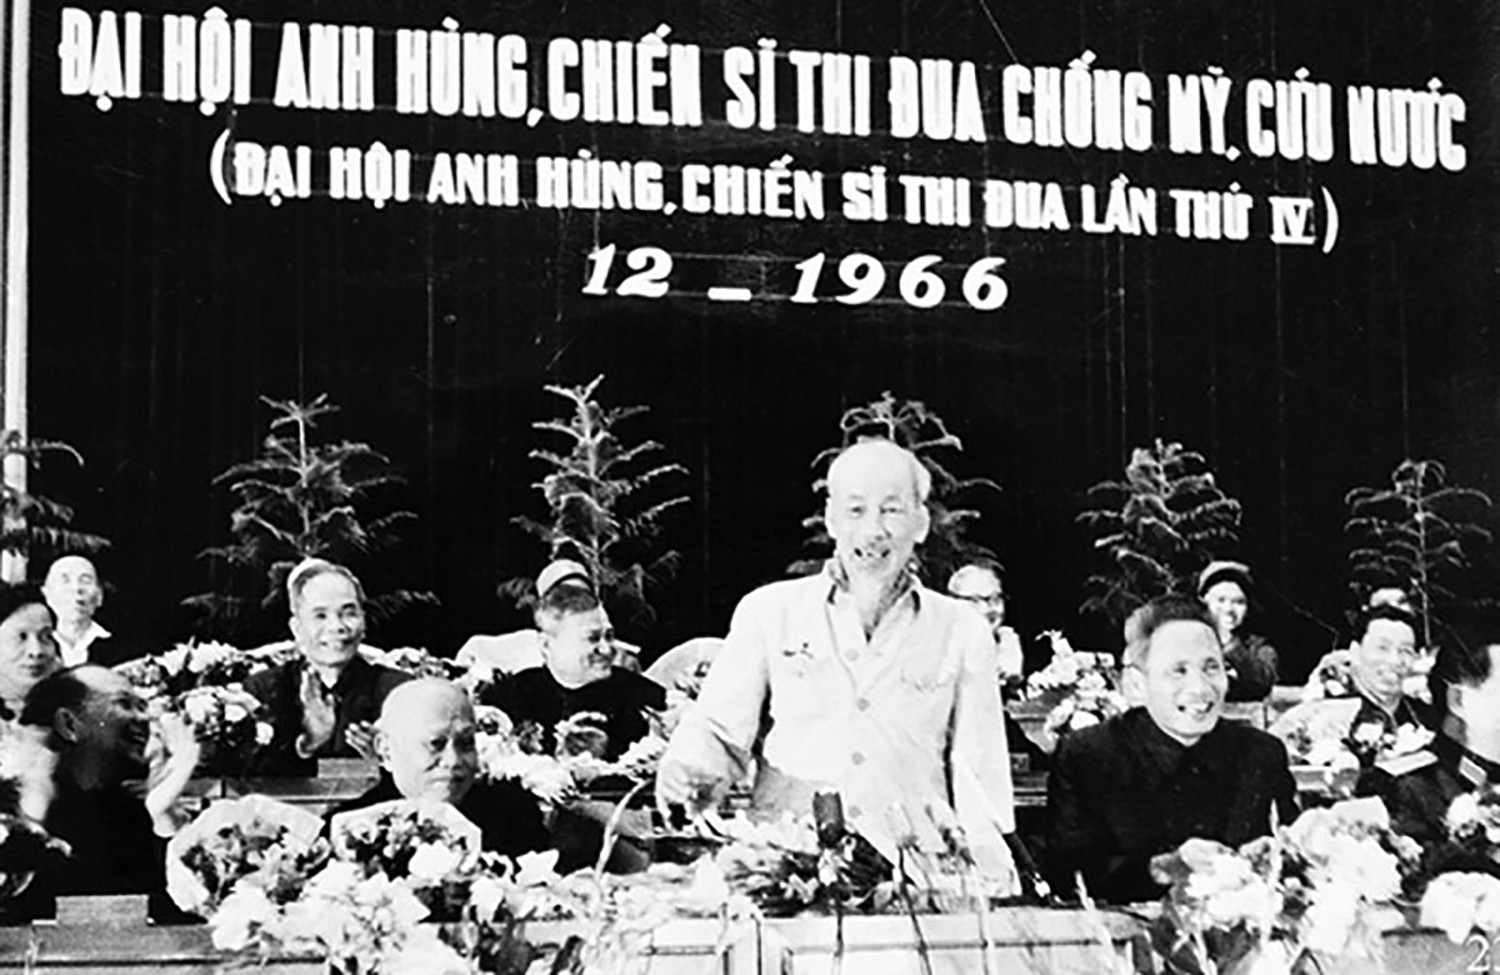 Chủ tịch Hồ Chí Minh tại Đại hội anh hùng, chiến sỹ thi đua chống Mỹ cứu nước, năm 1966.